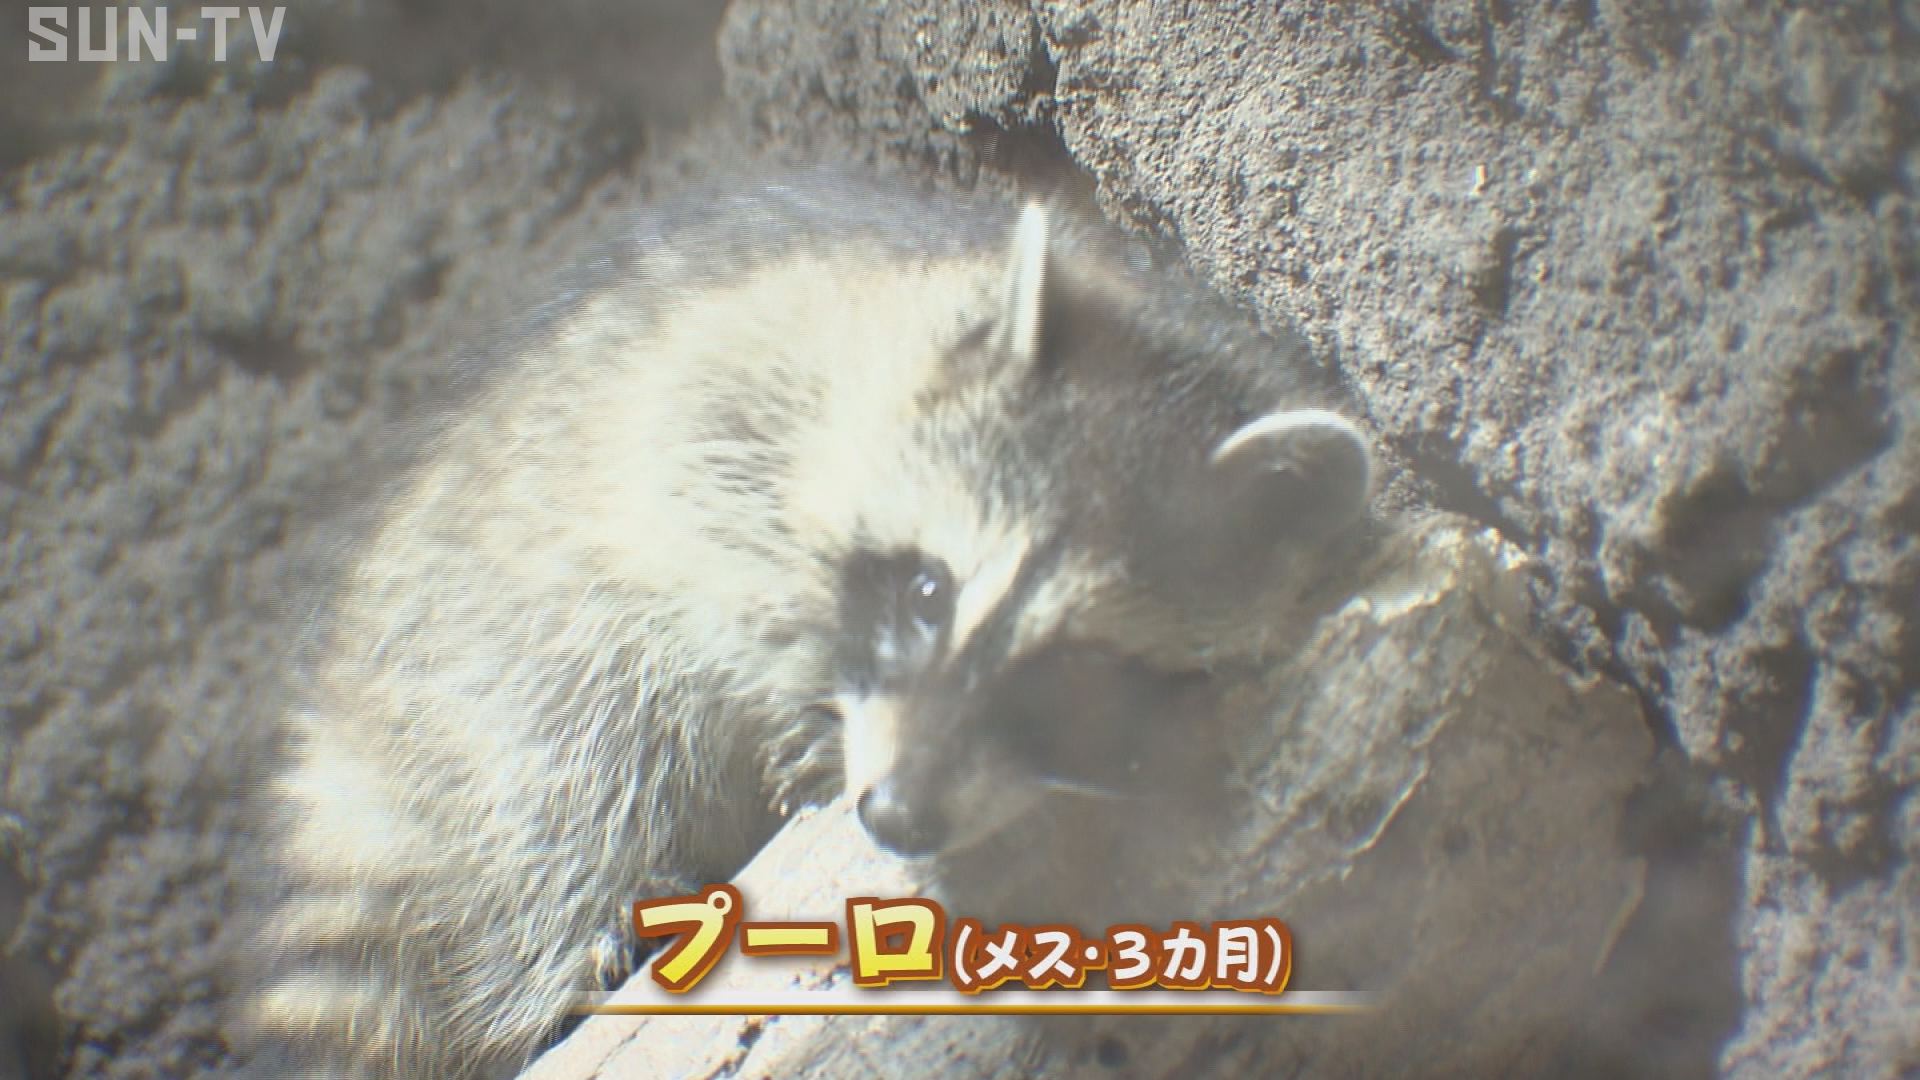 休園中に誕生のアライグマの赤ちゃん 神戸どうぶつ王国が公開 サンテレビニュース